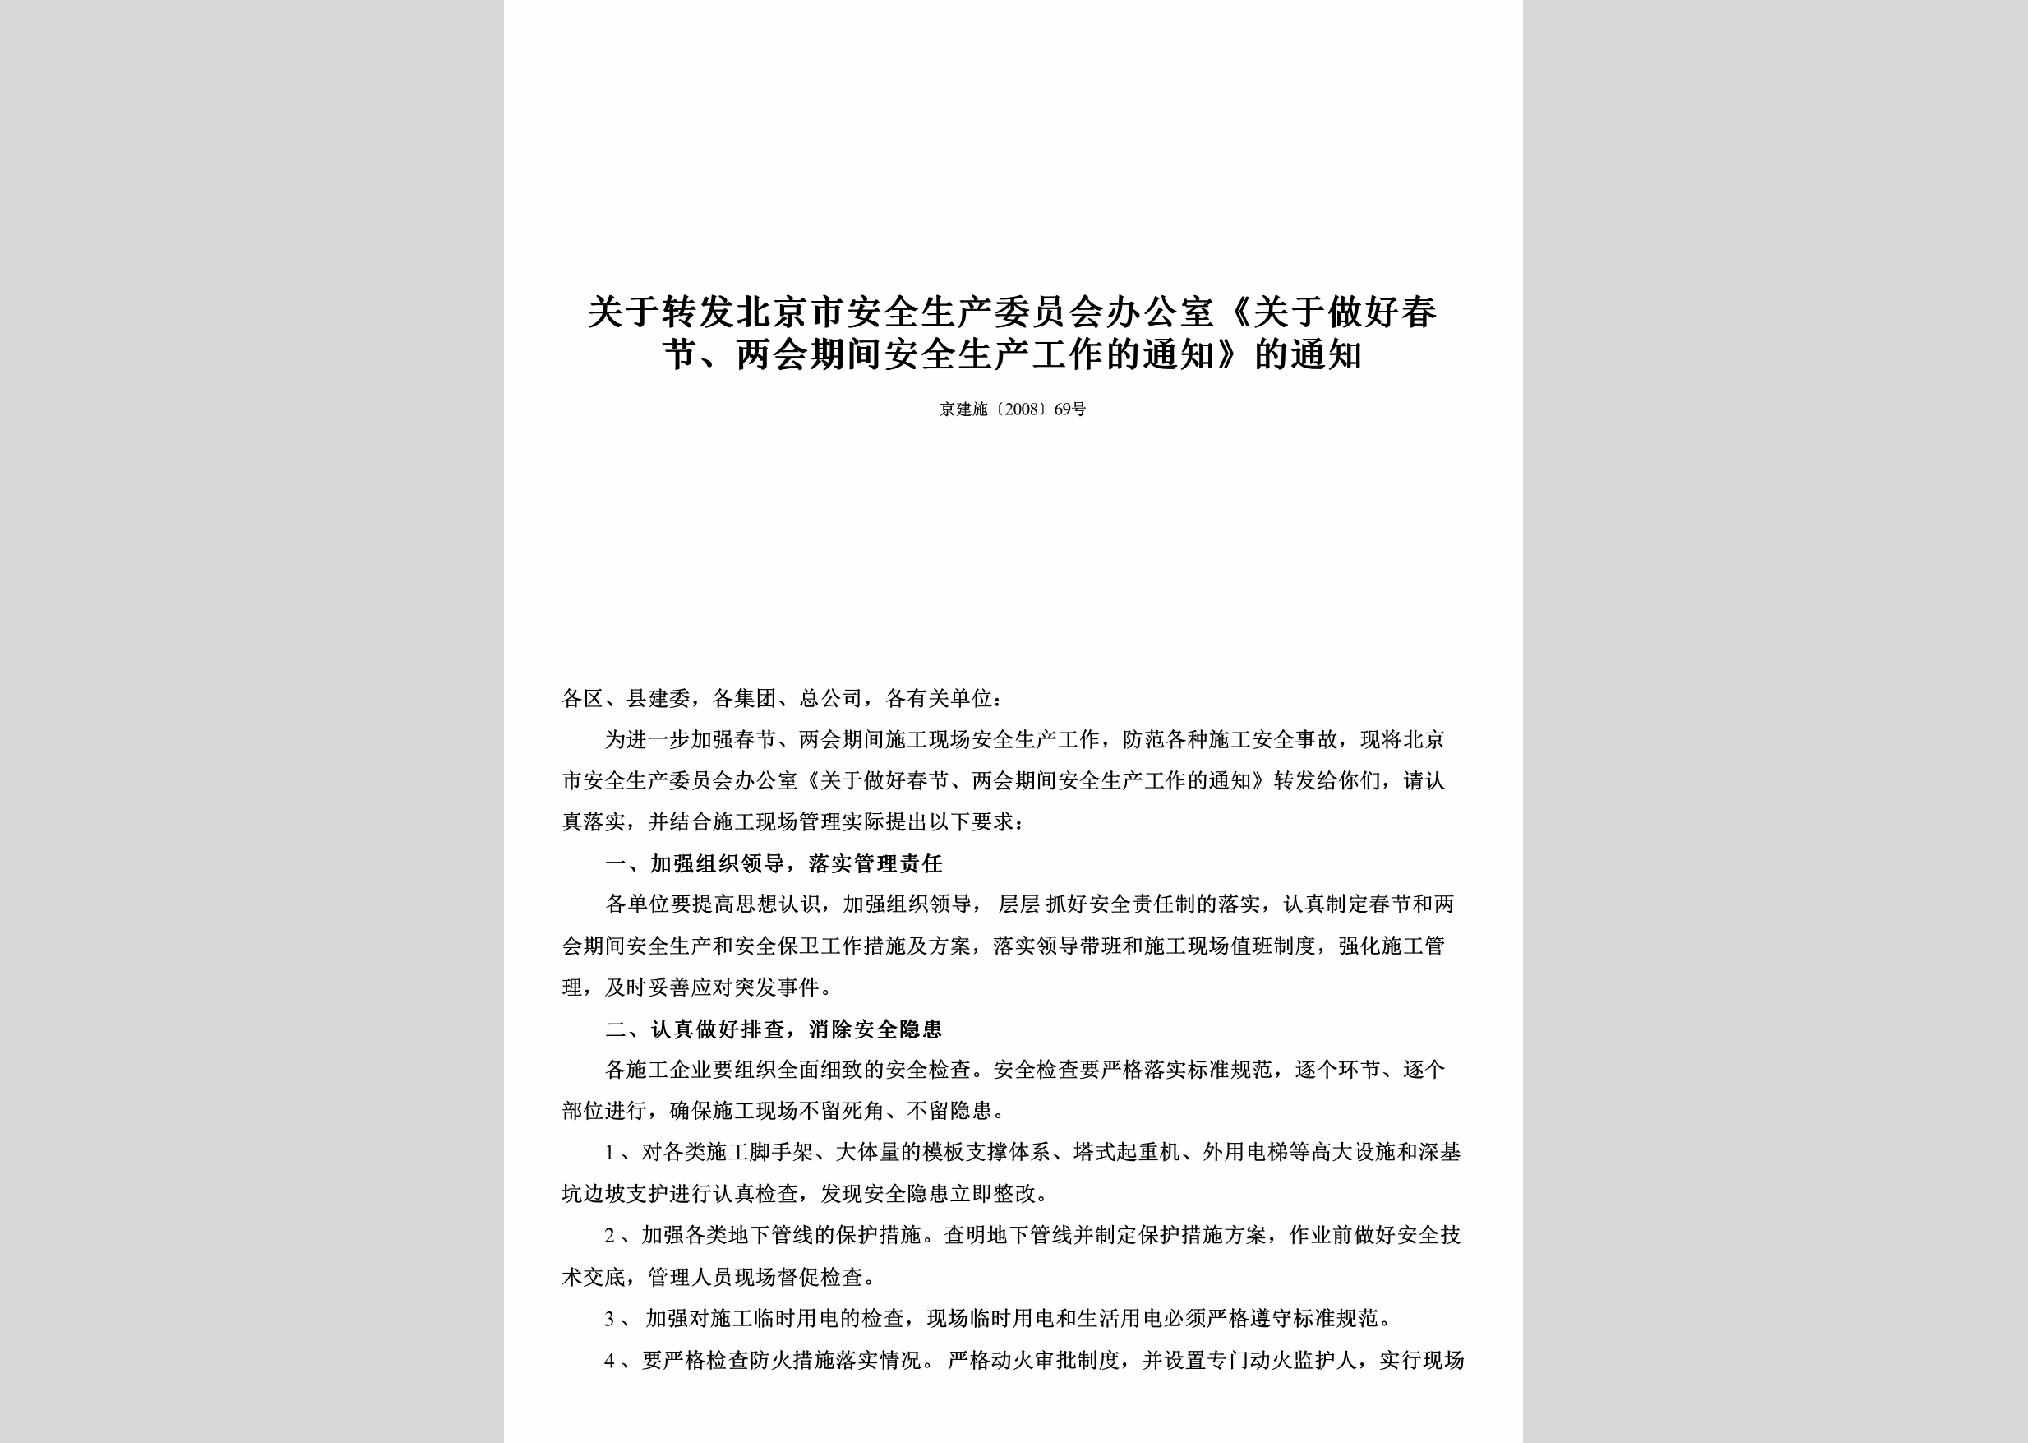 京建施[2008]69号：关于转发北京市安全生产委员会办公室《关于做好春节、两会期间安全生产工作的通知》的通知